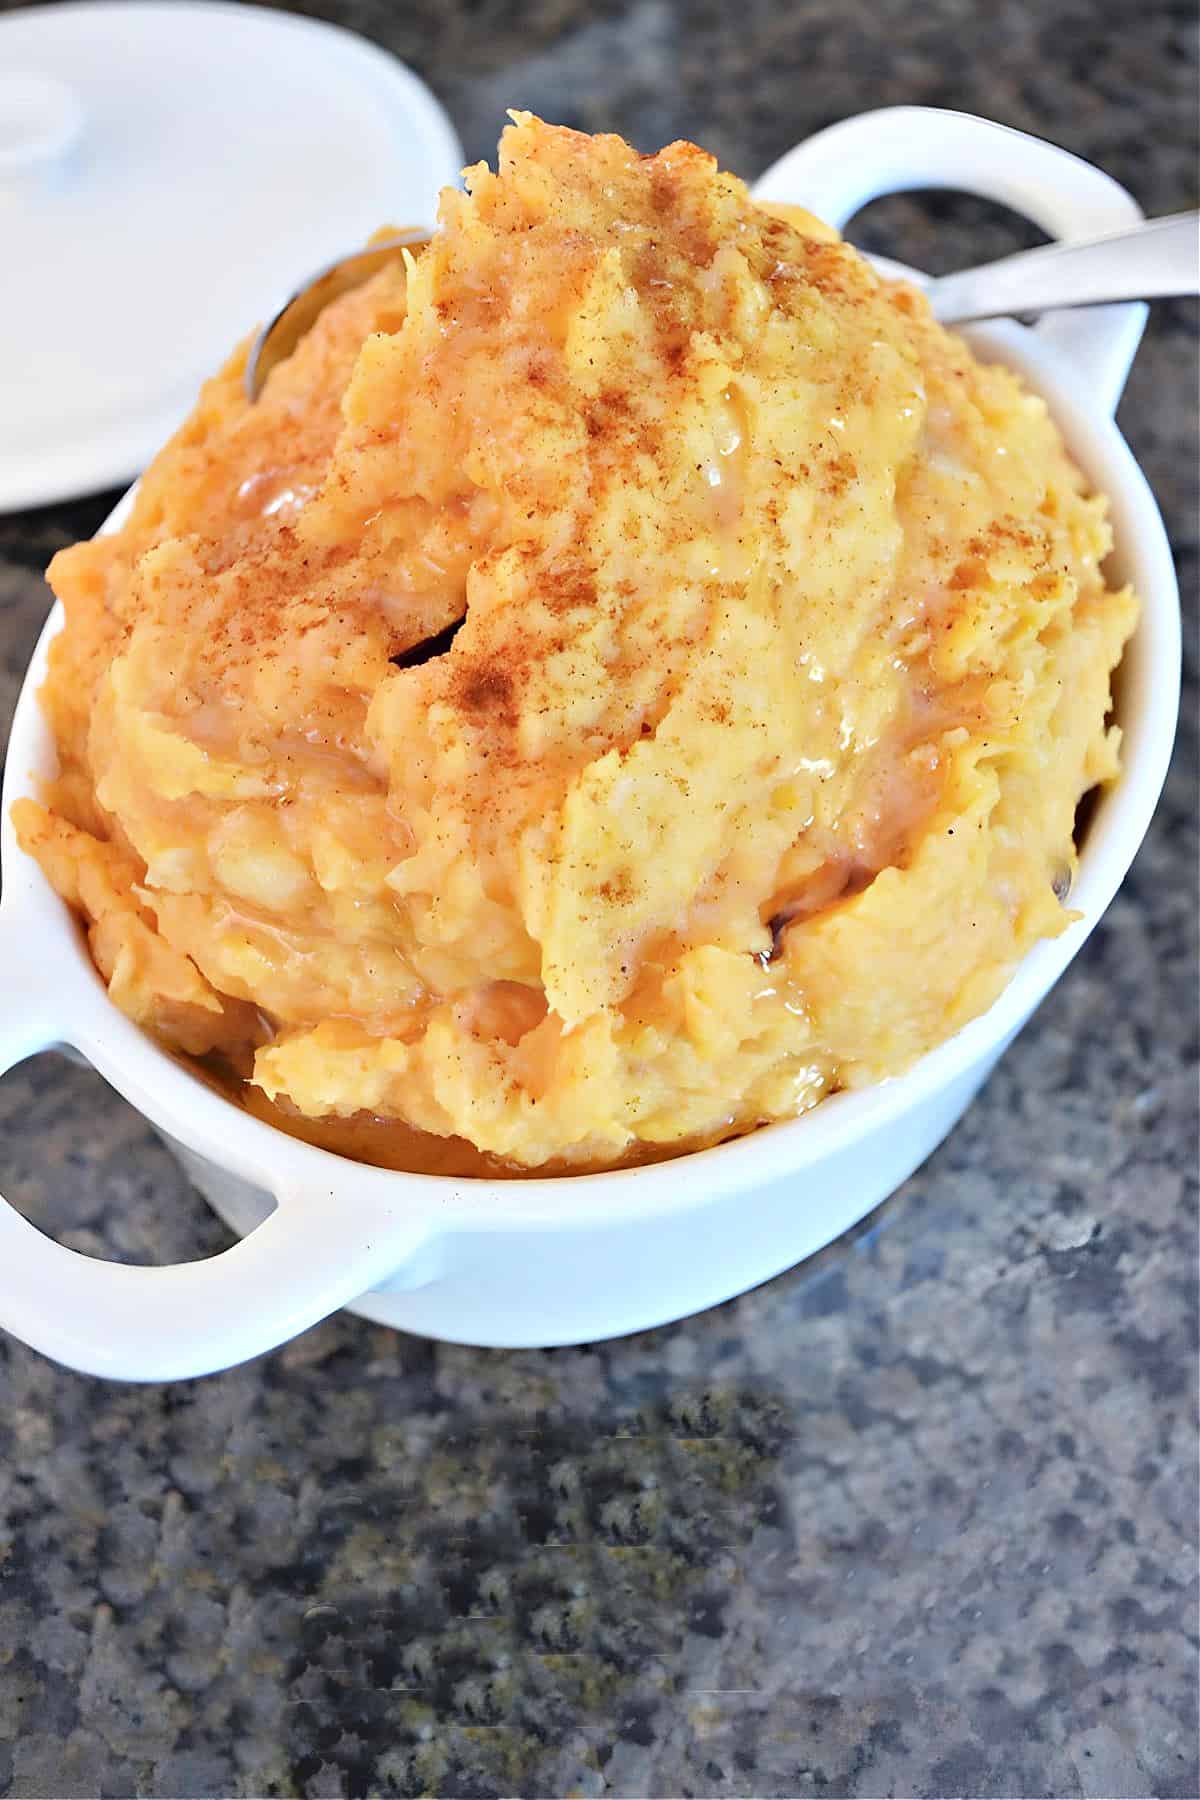 Vegan Mashed Potatoes Recipe